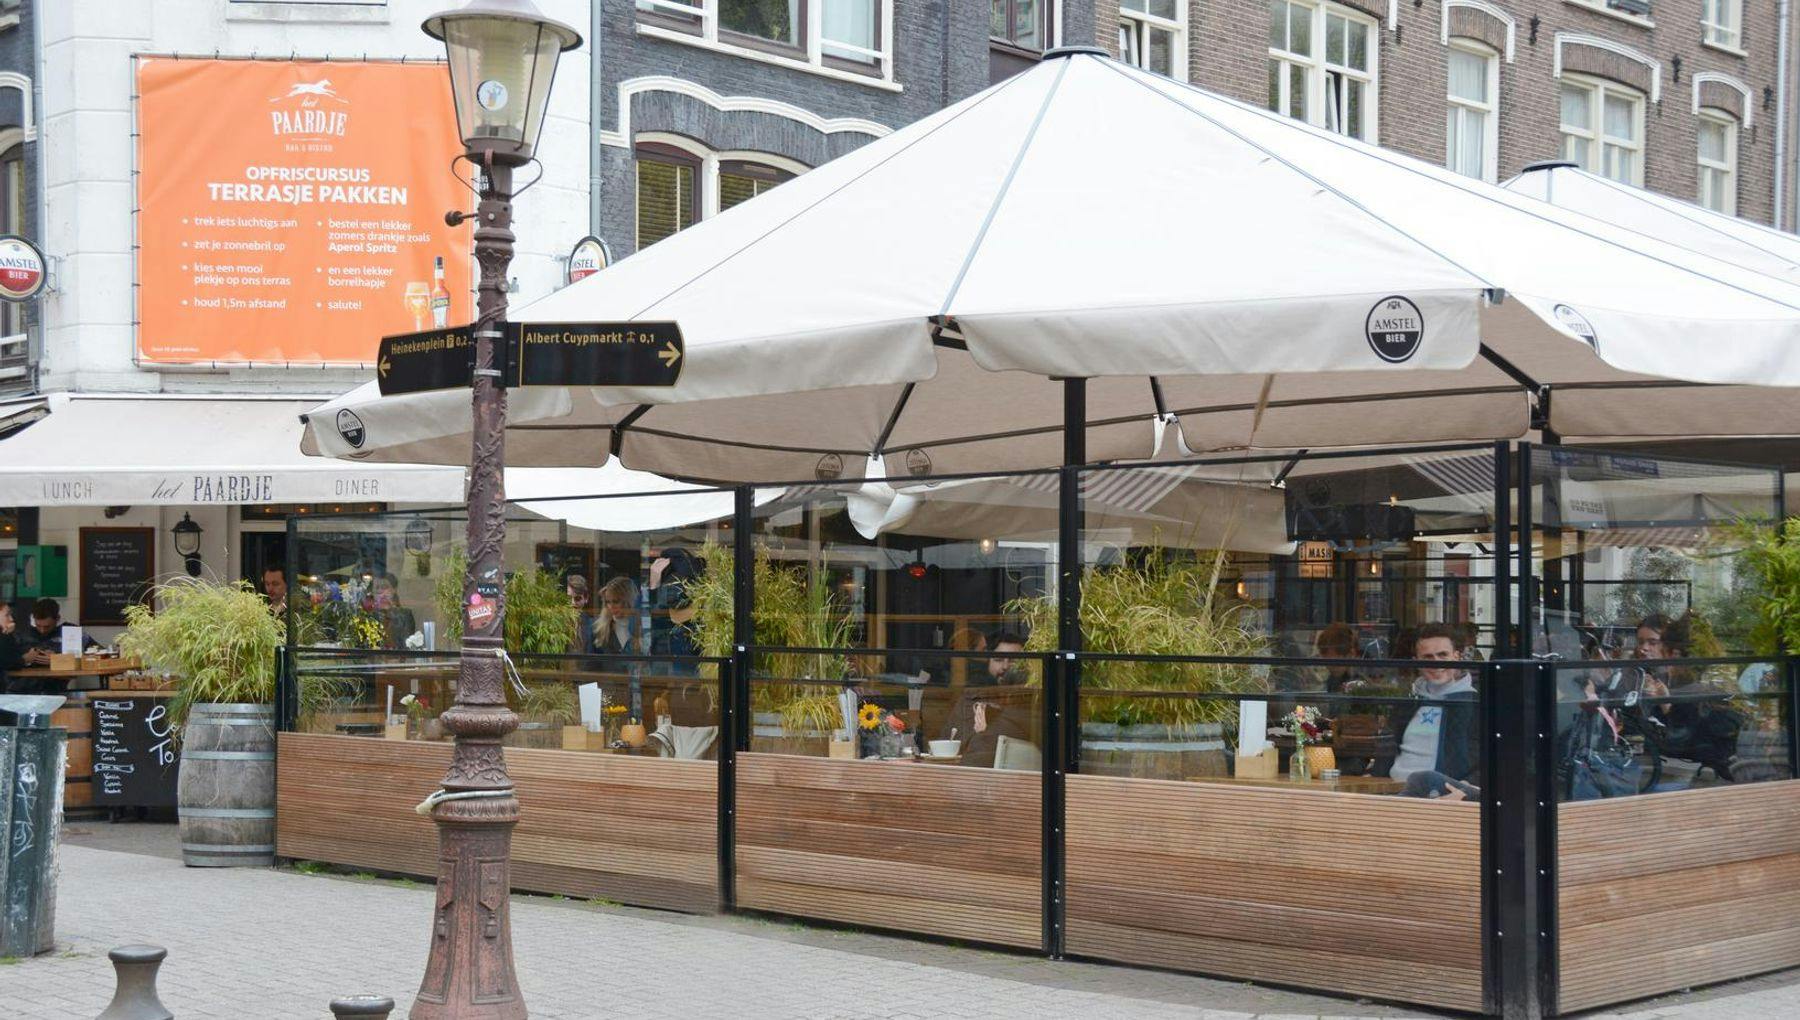 Café Het Paardje terrace in Amsterdam De Pijp